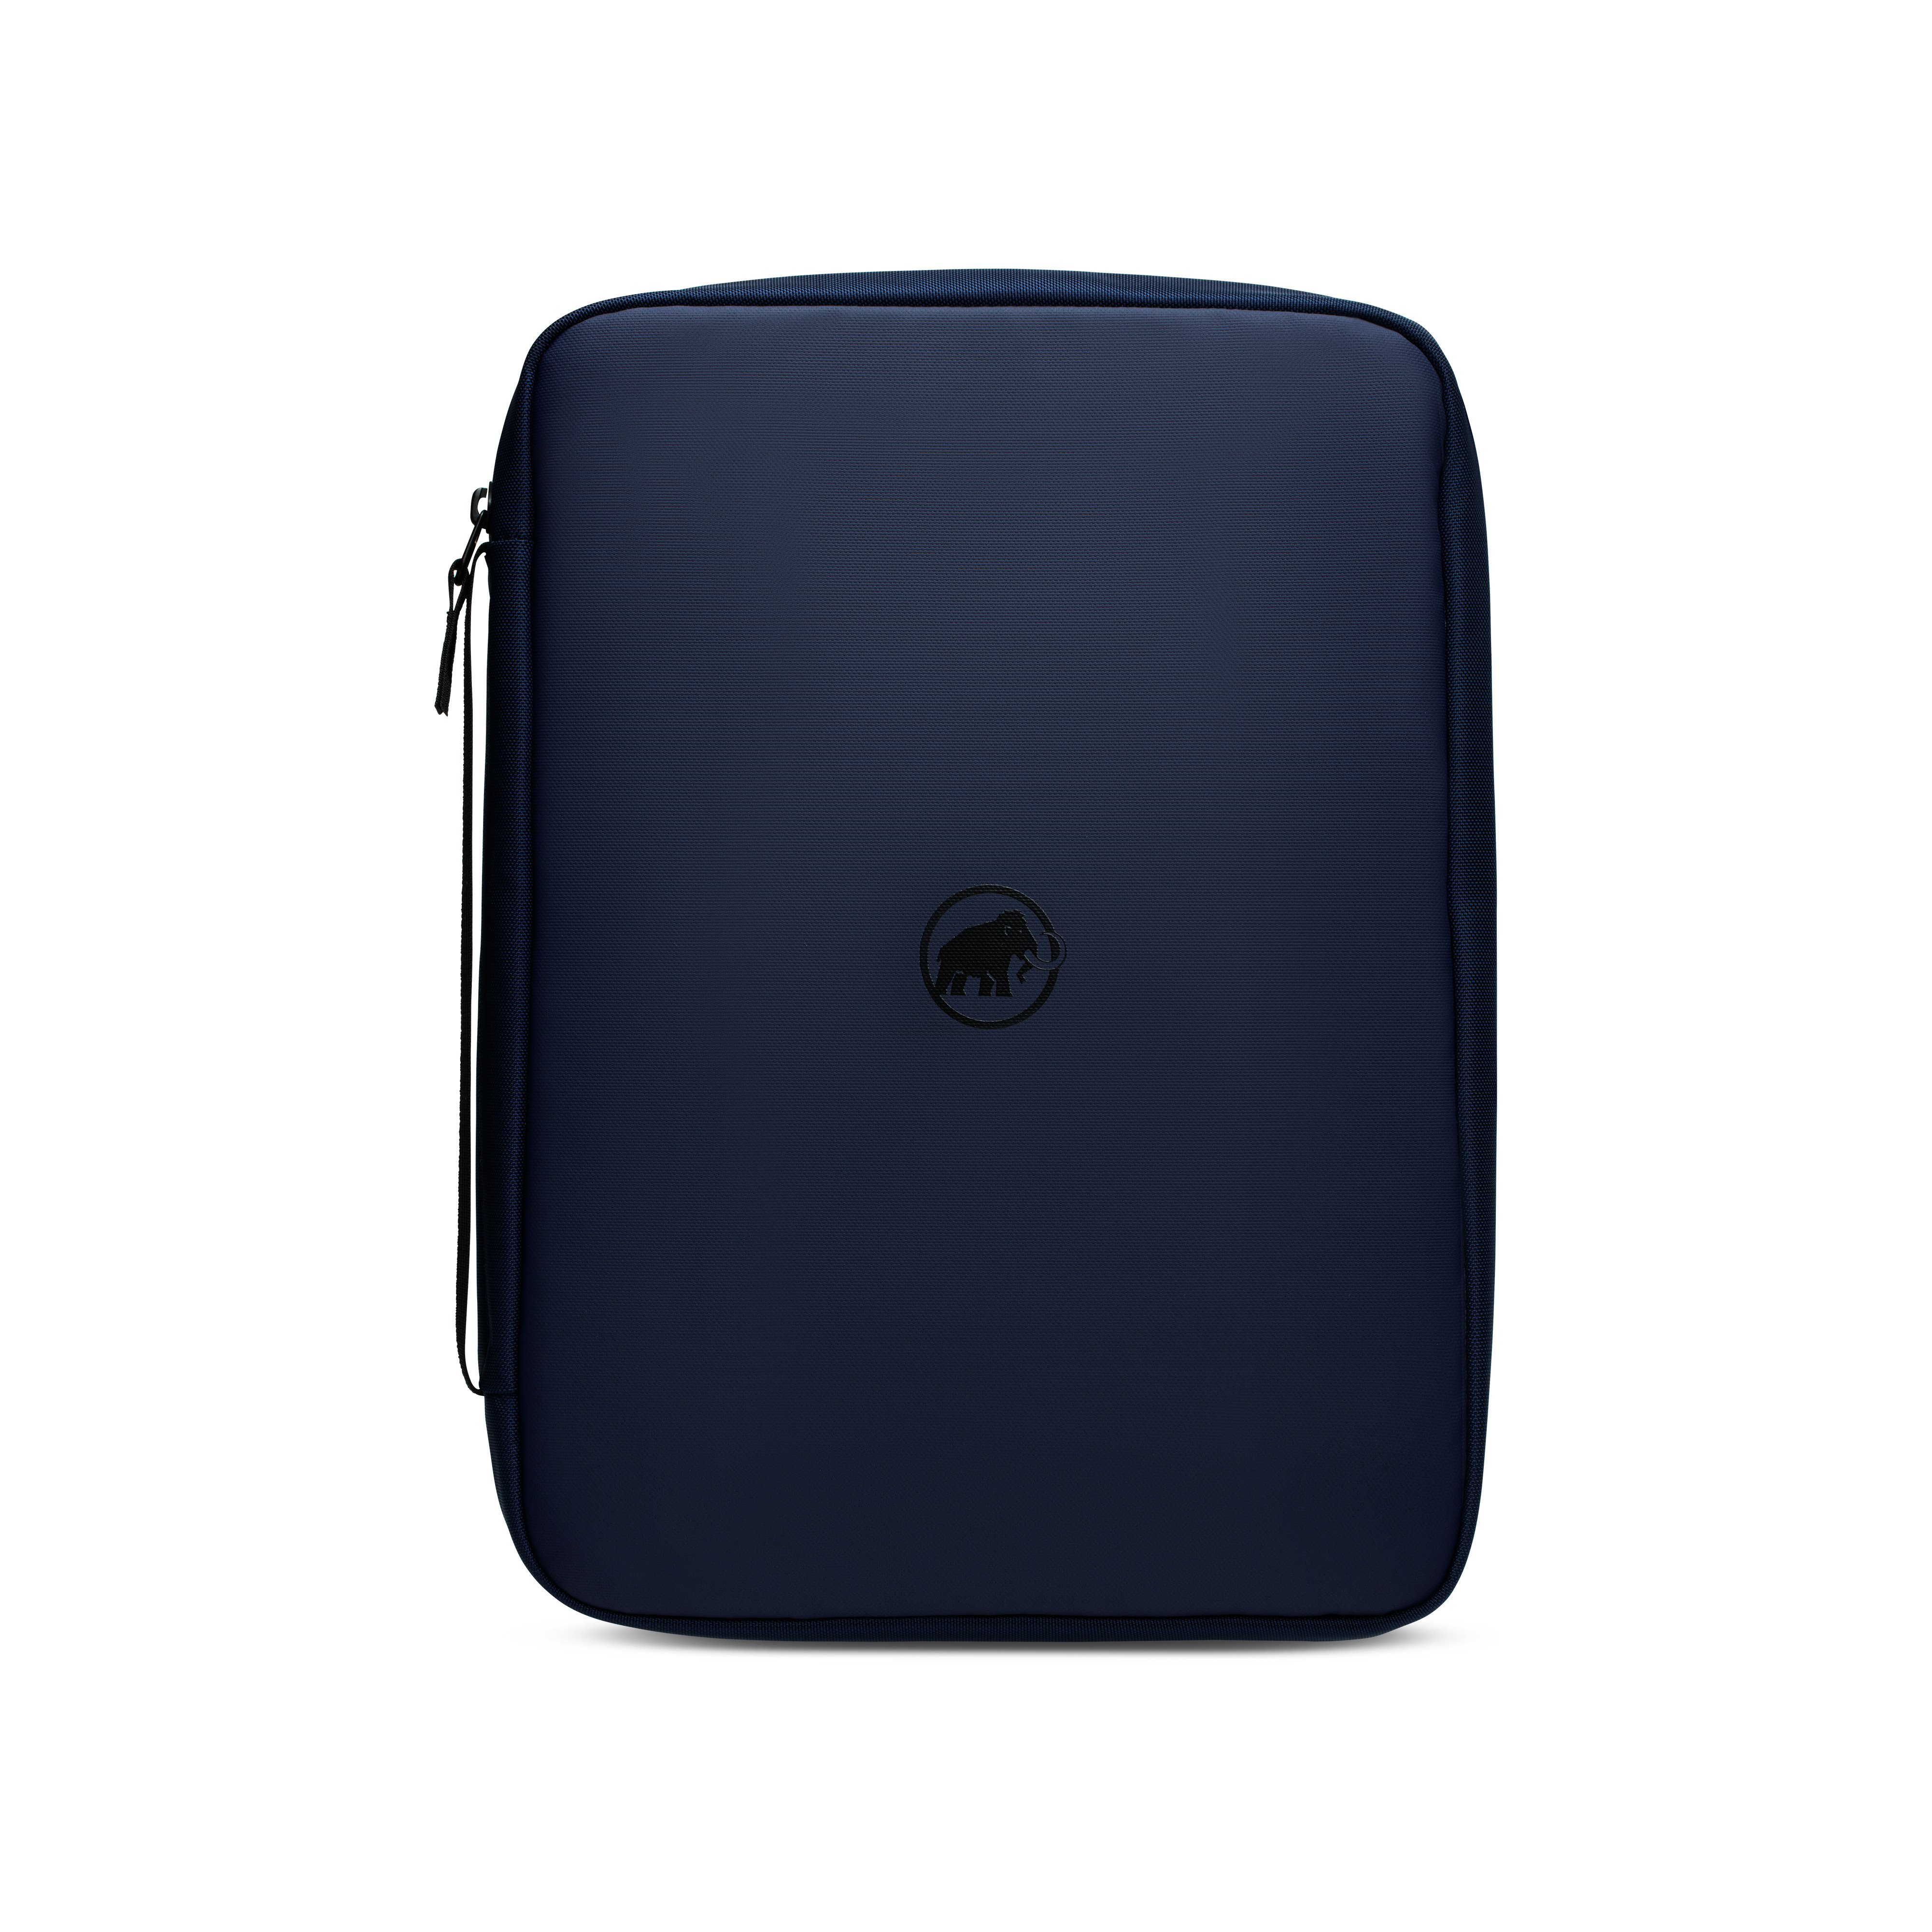 Seon Laptop Case - marine, one size product image